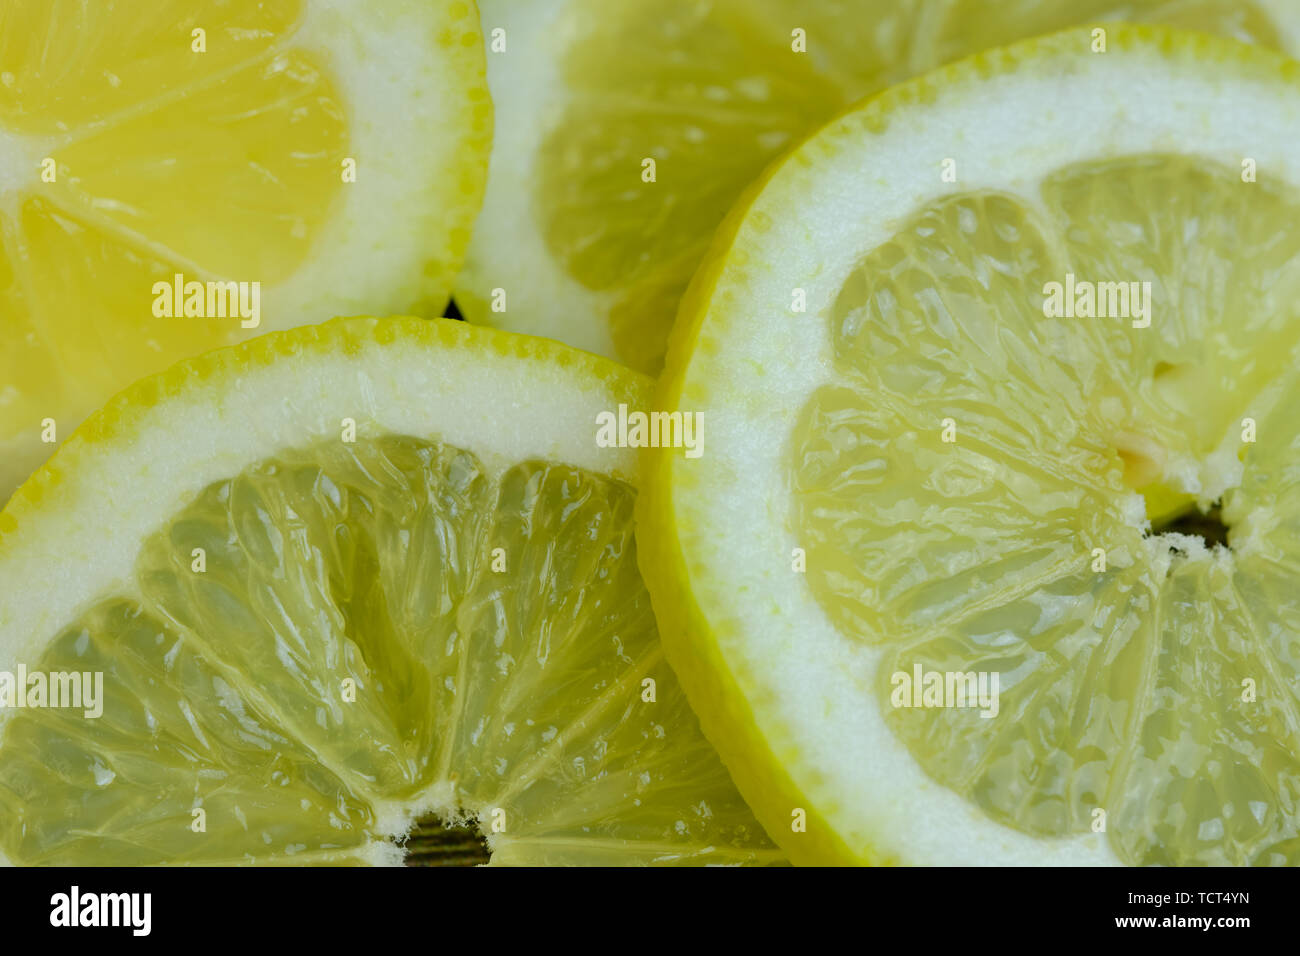 Les tranches de citron photo couleur, photo comme arrière-plan pour le texte de remplissage Banque D'Images